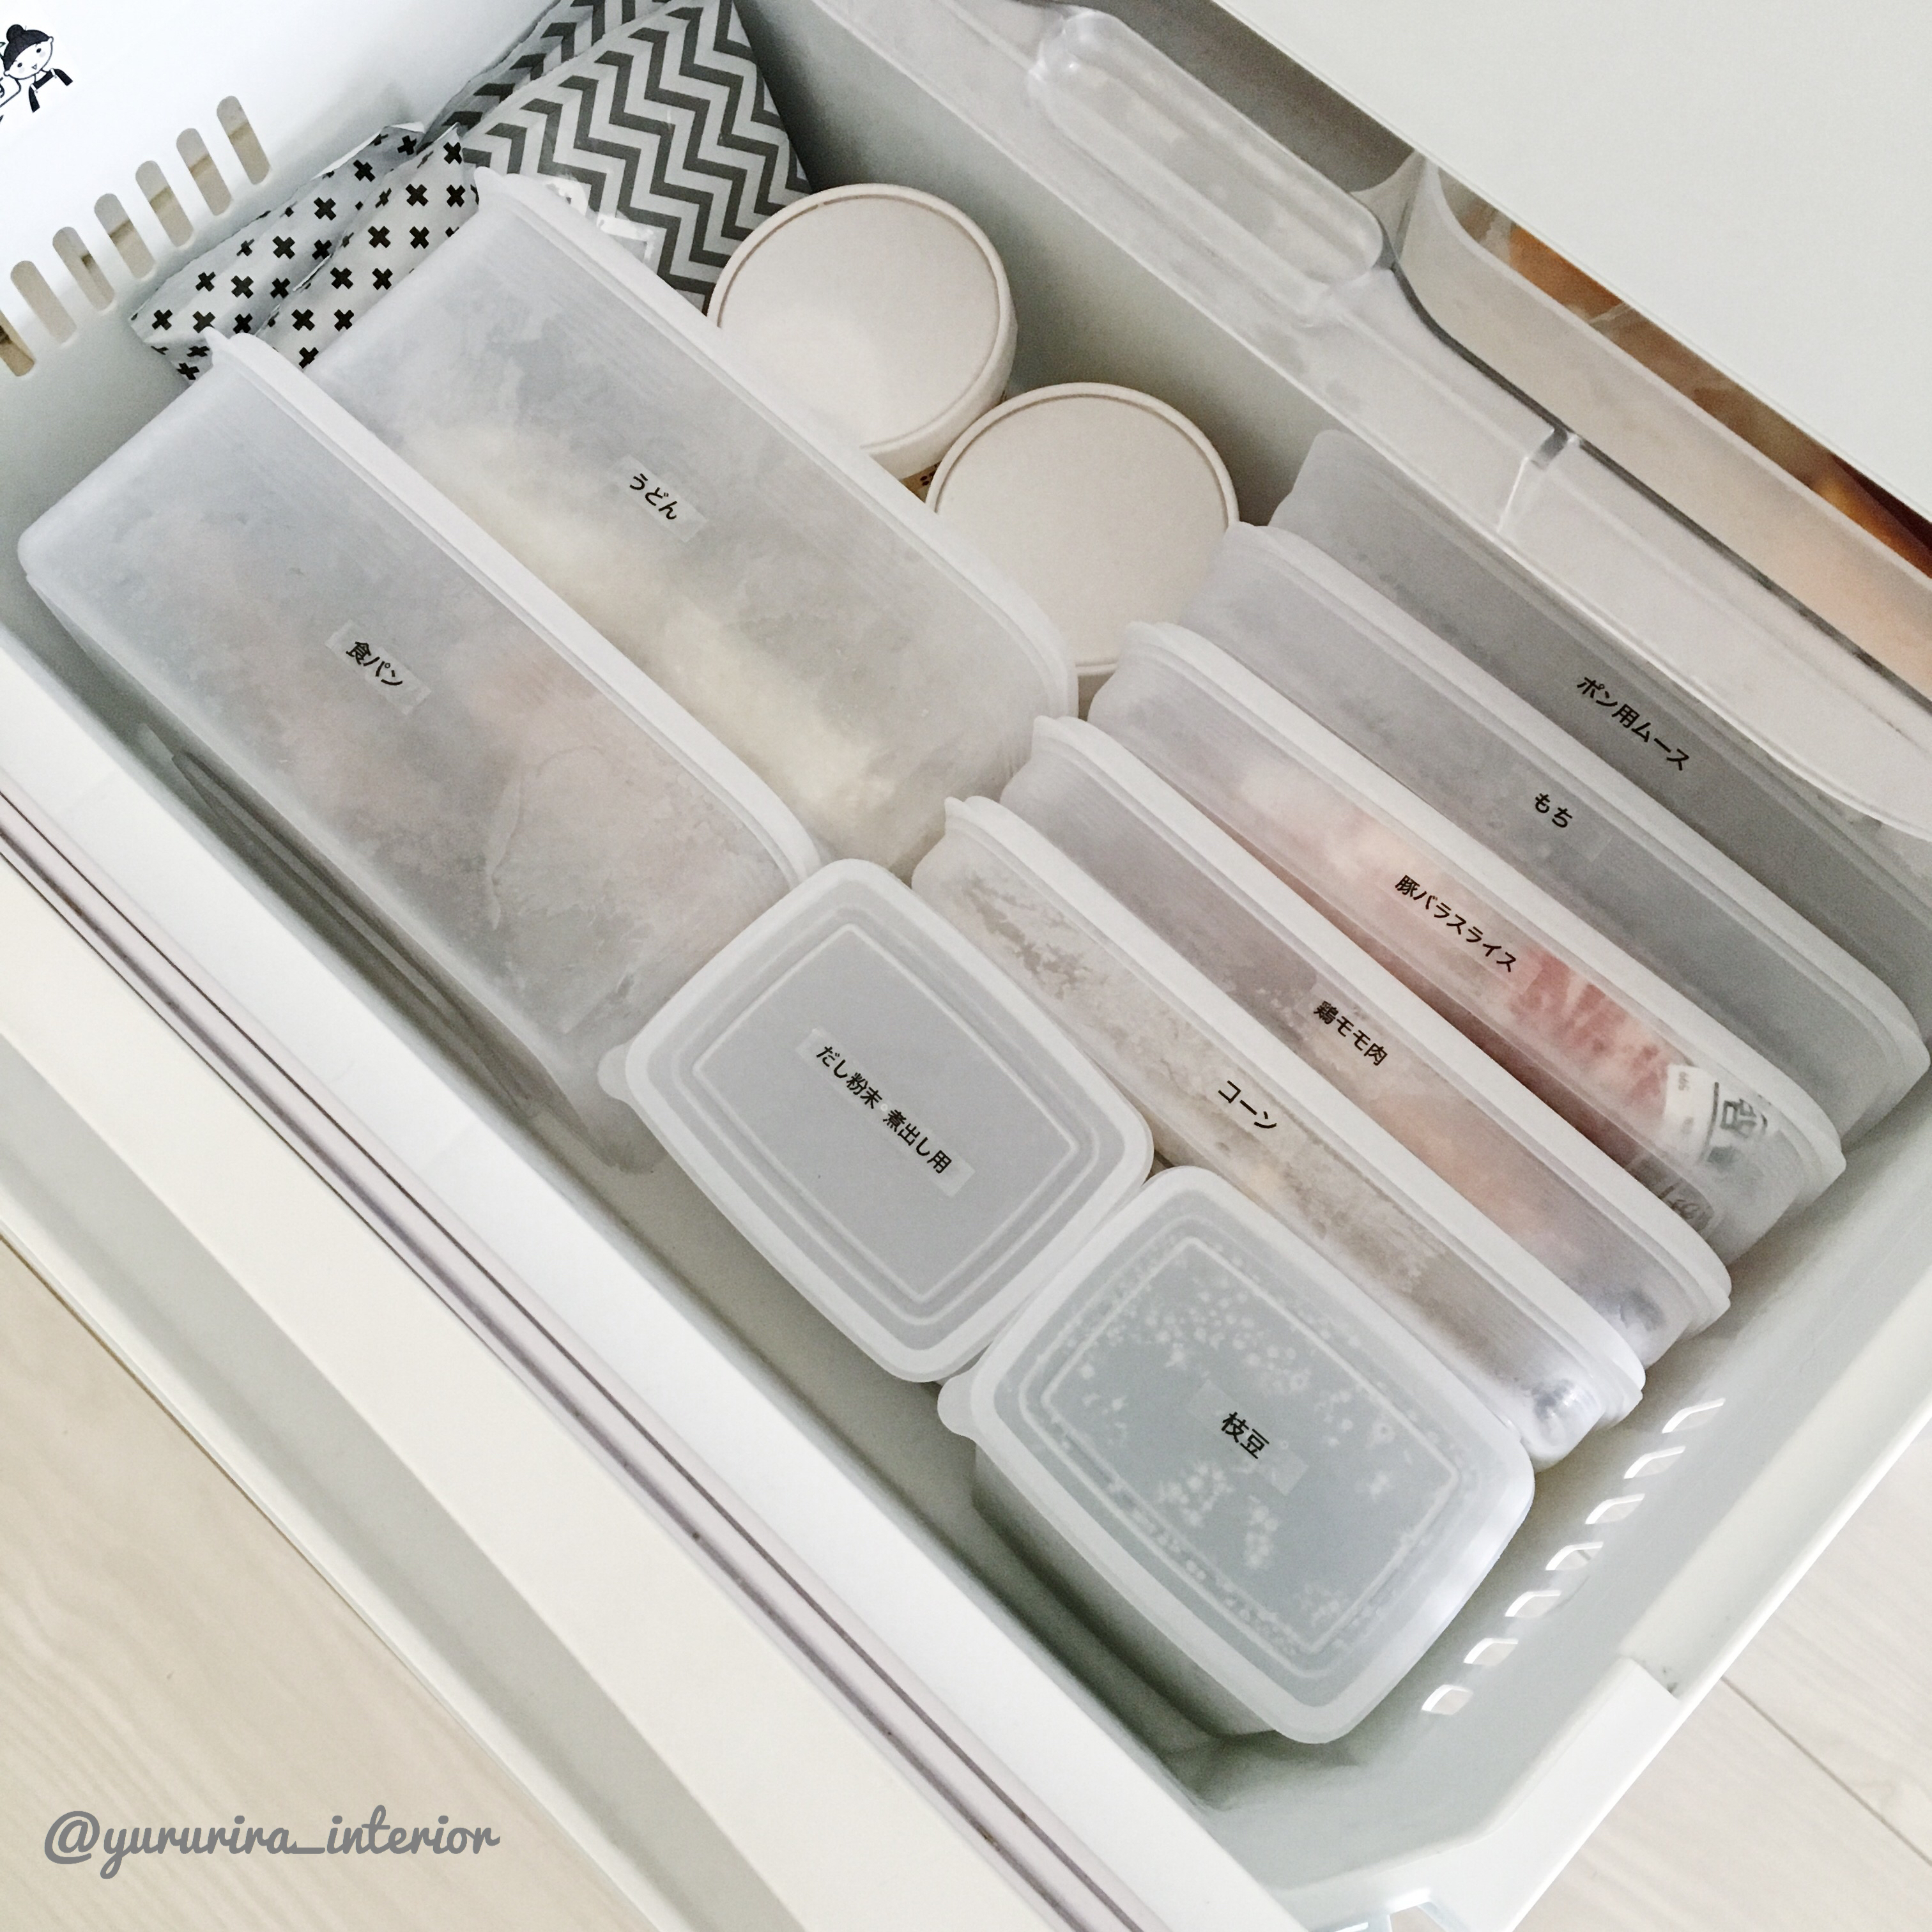 セリアをフル活用 な整然とまとめた冷凍庫収納 Yururira S Interior Blog